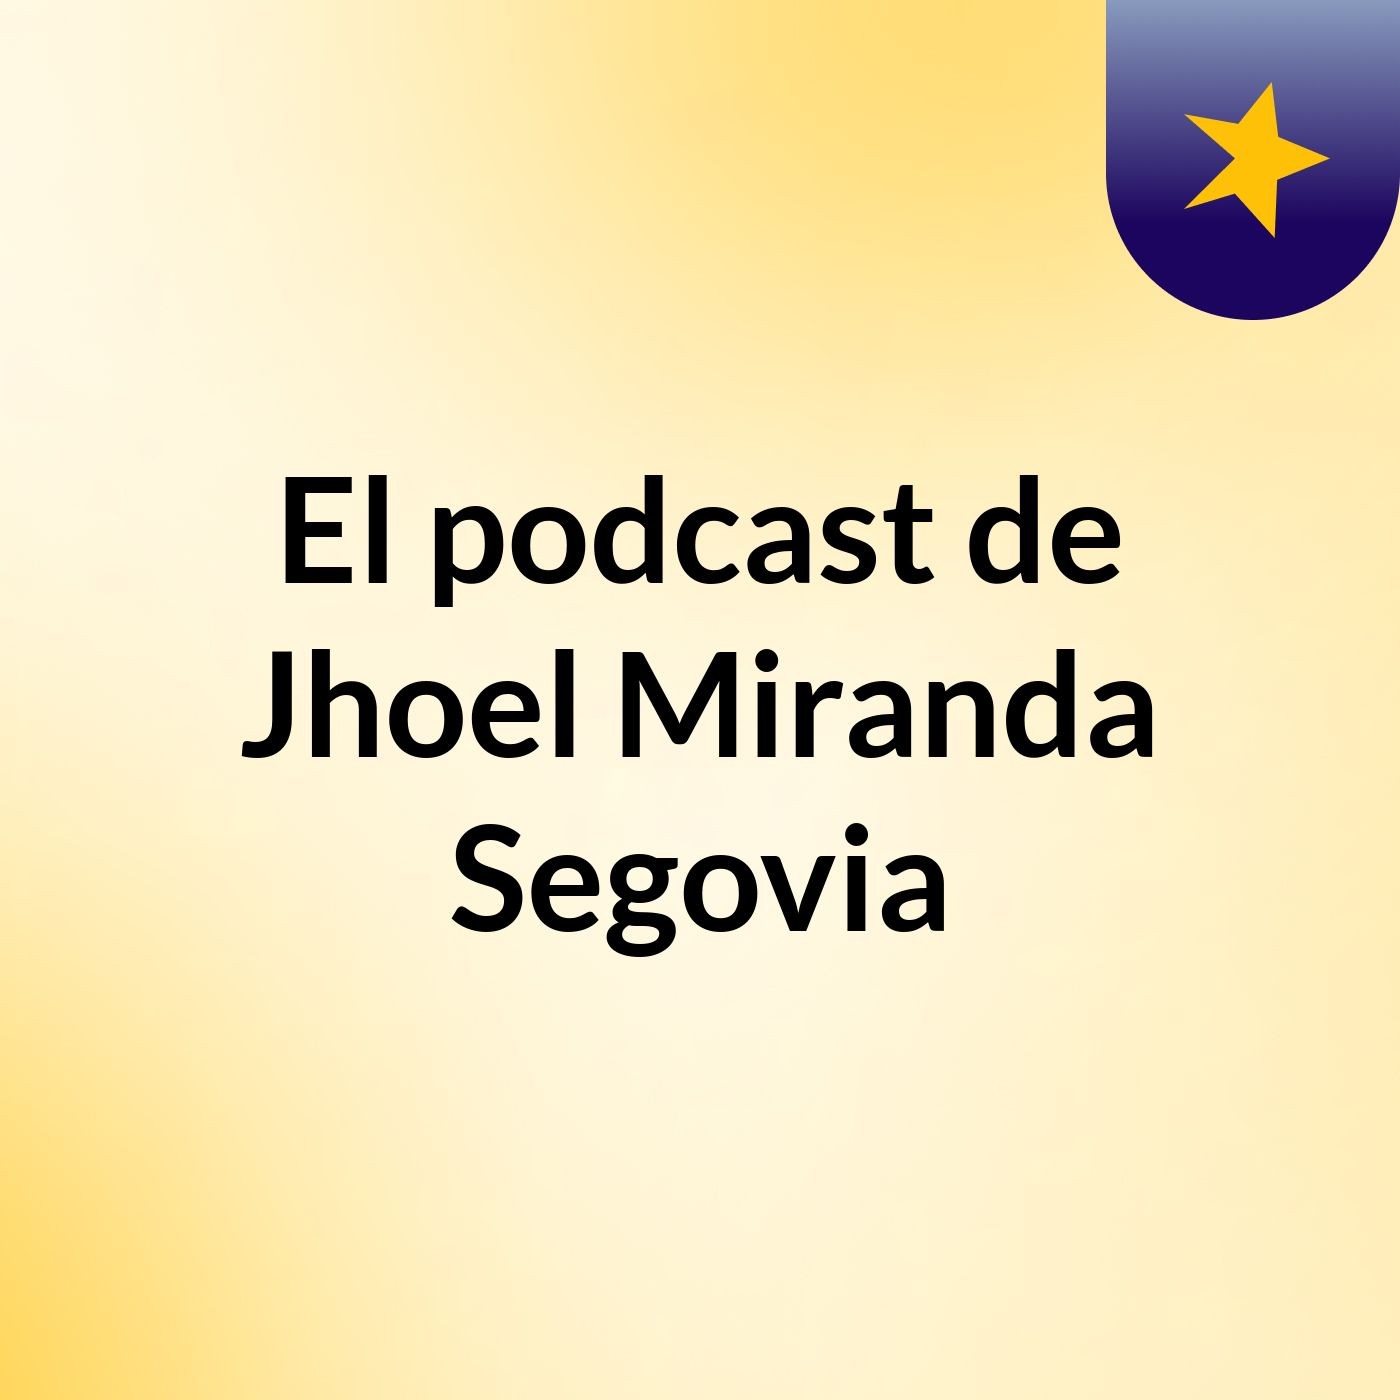 El podcast de Jhoel Miranda Segovia